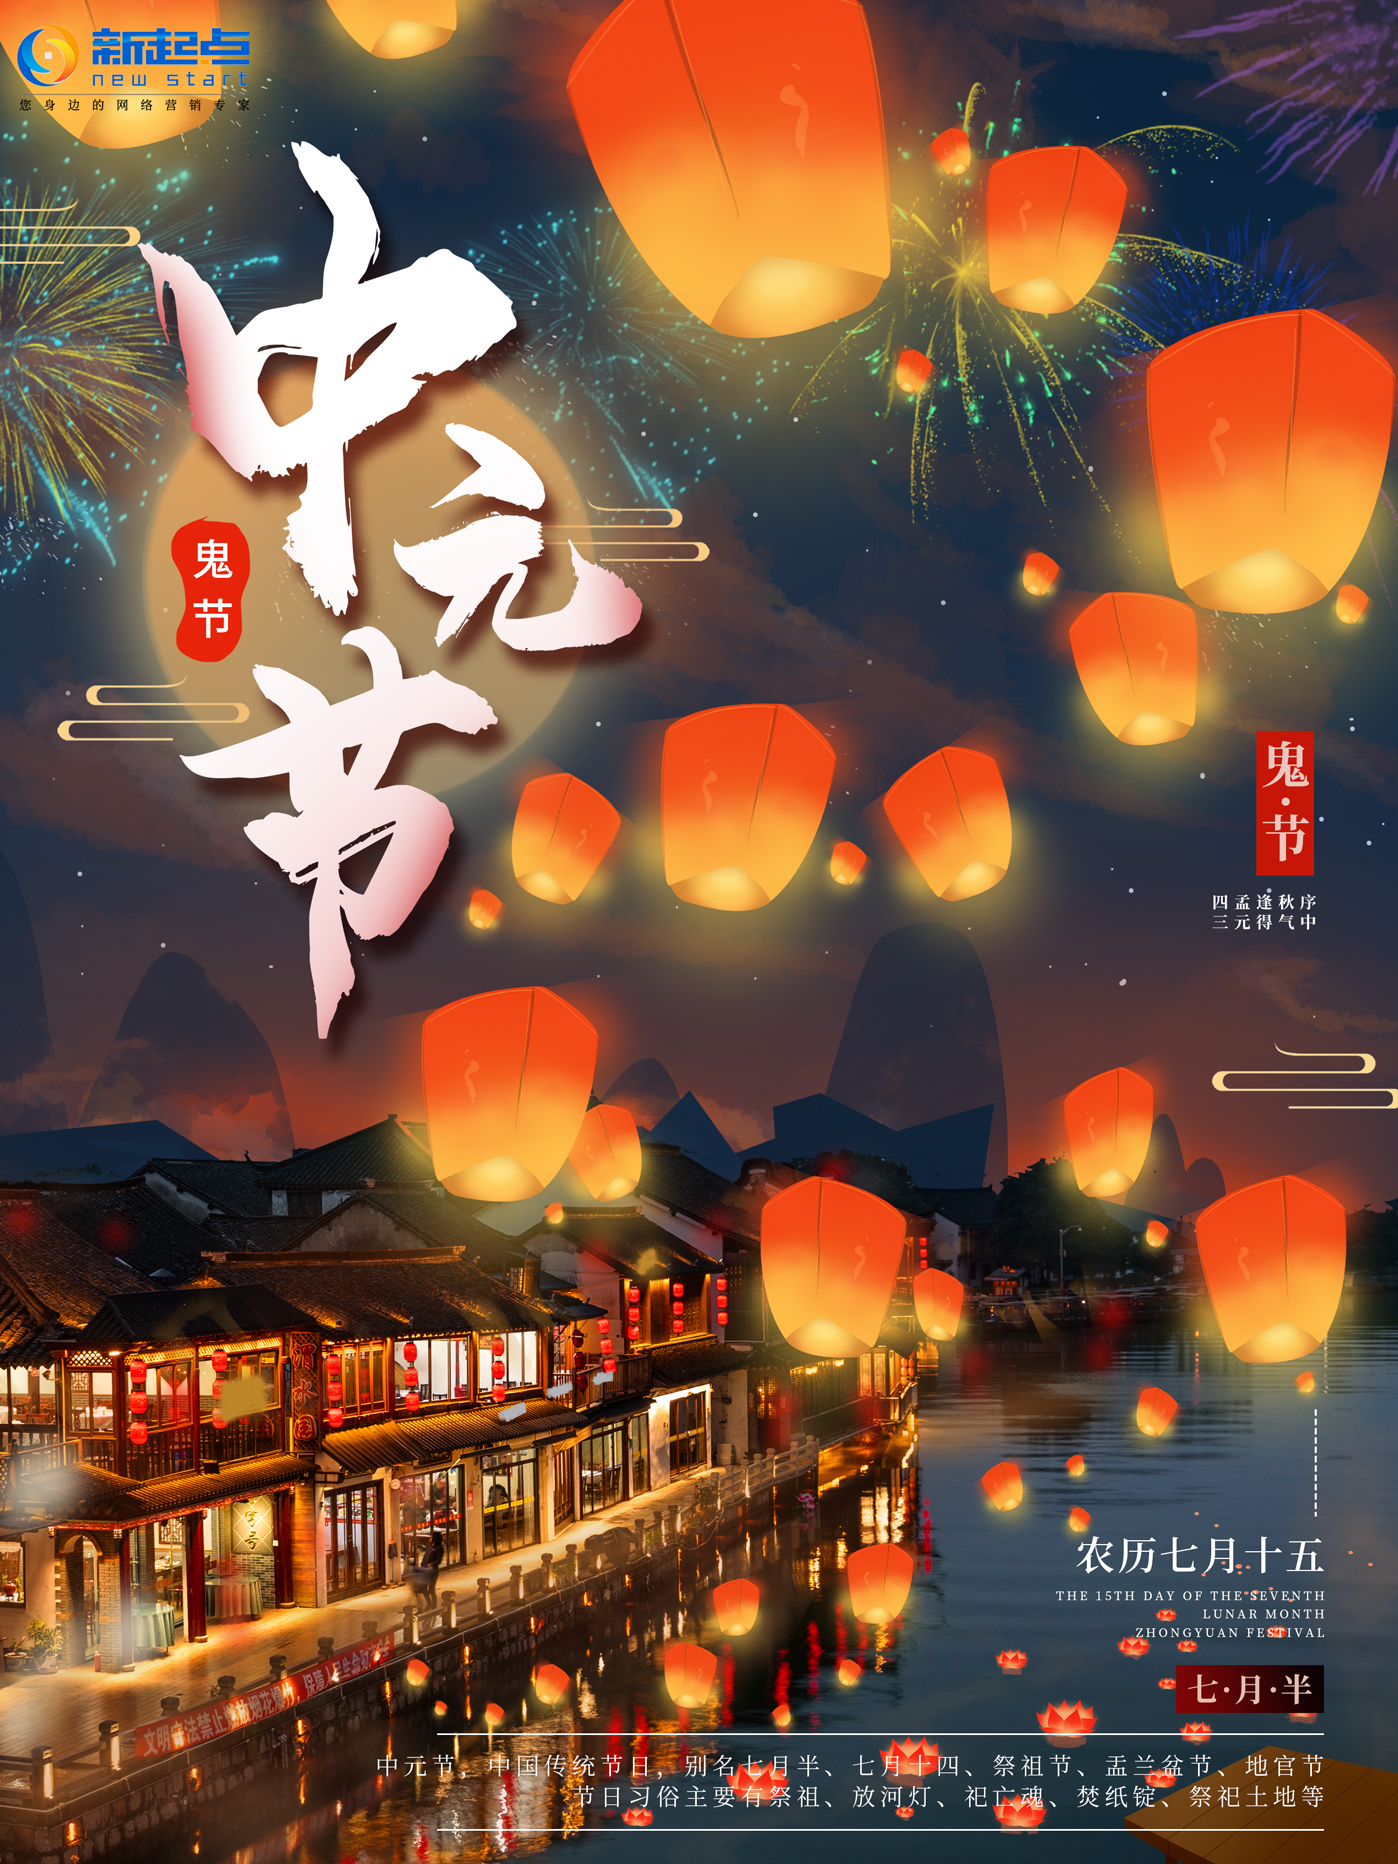 中元节，祭先祖，求平安！